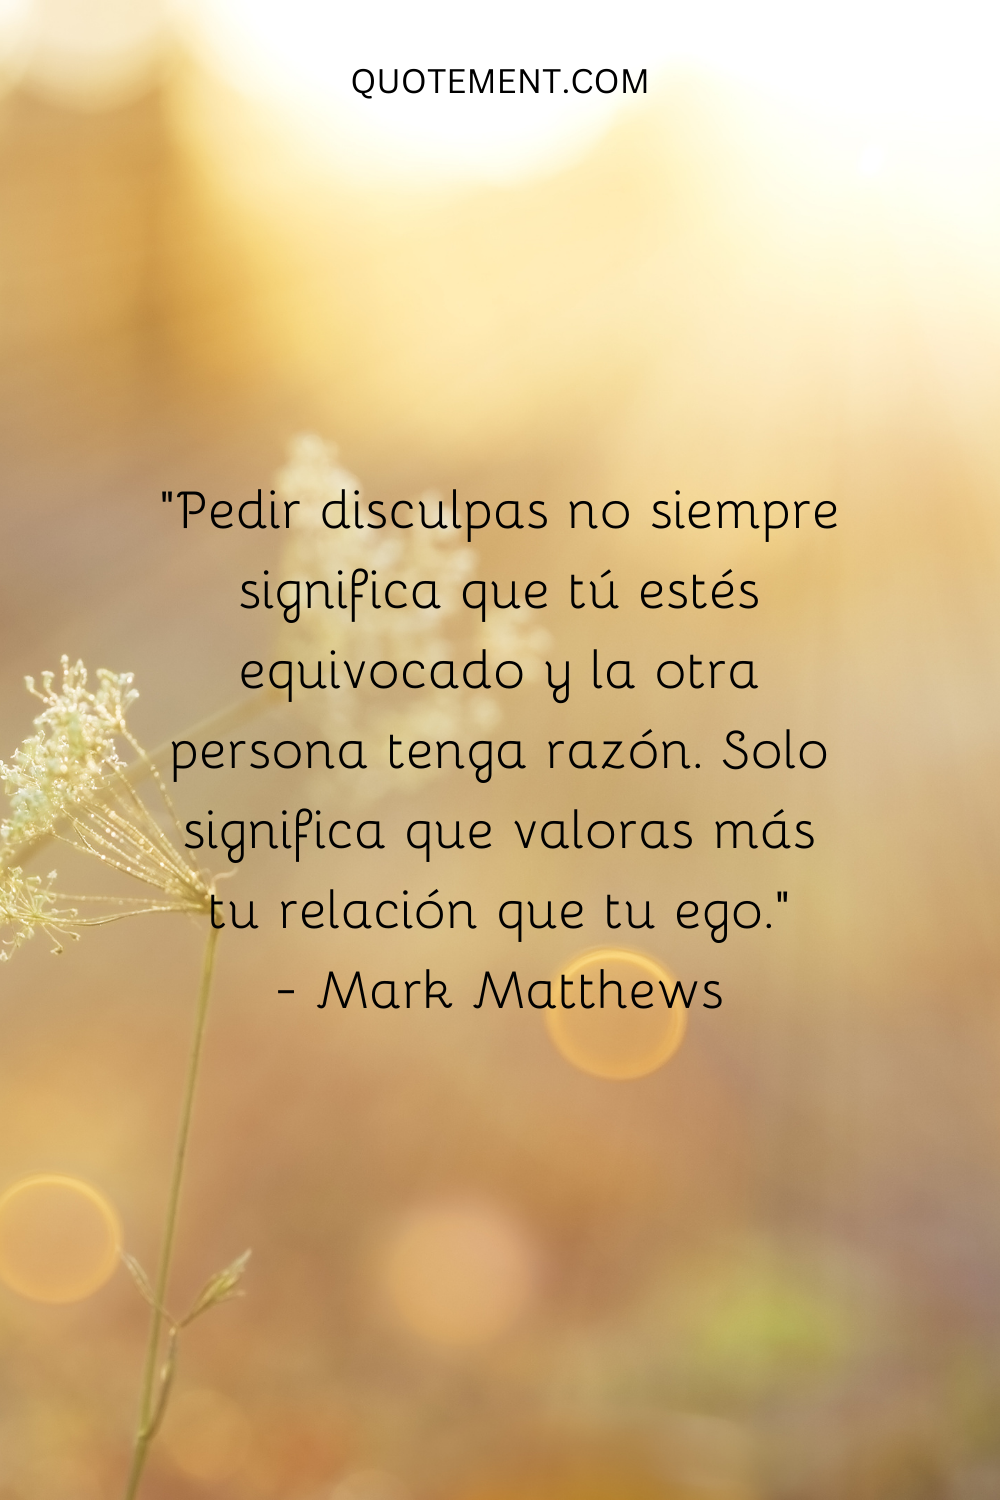 "Pedir disculpas no siempre significa que tú estés equivocado y la otra persona tenga razón. Solo significa que valoras más tu relación que tu ego". - Mark Matthews